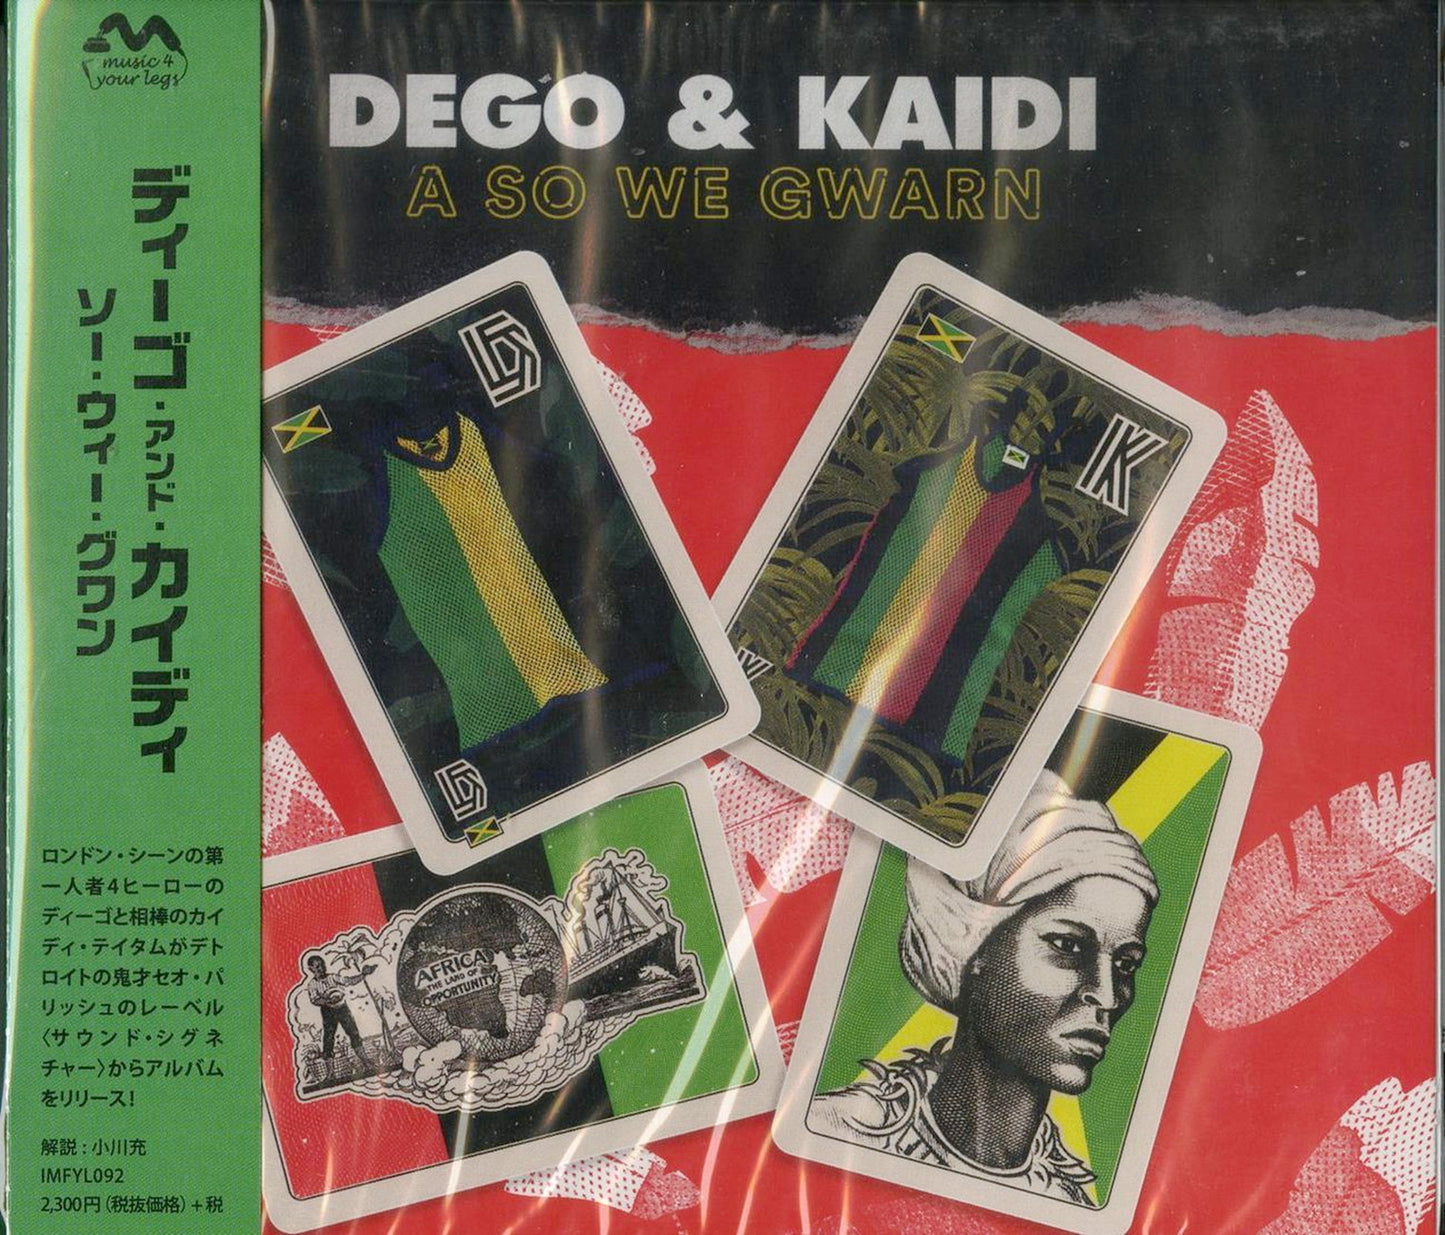 Dego & Kaidi - So We Gwarn - Japan CD